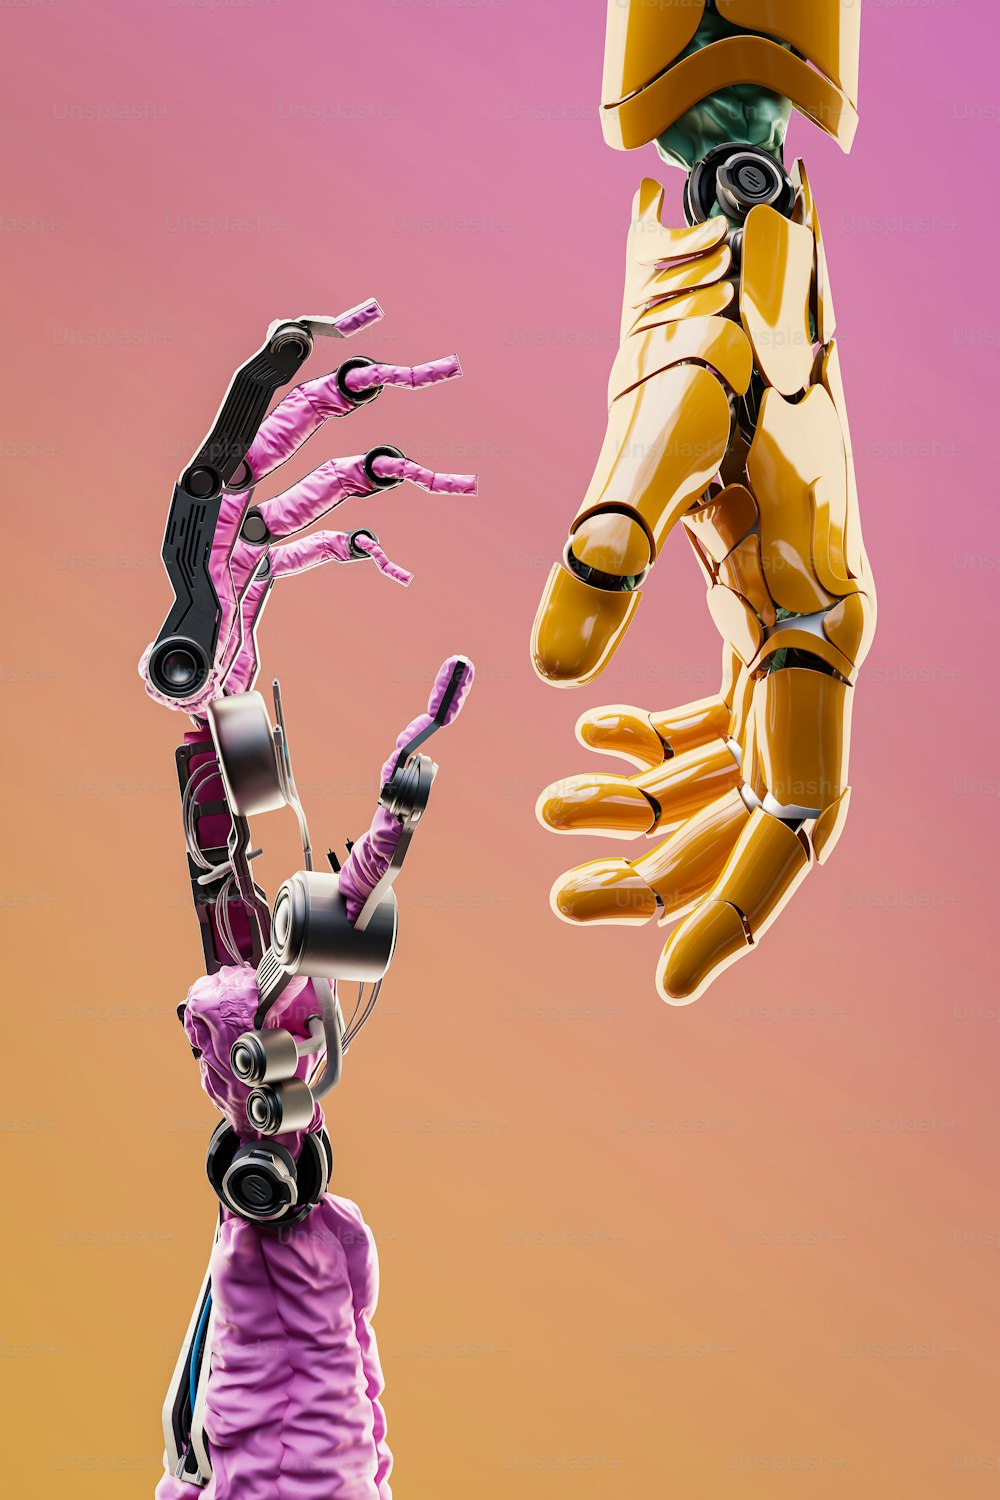 Un robot sosteniendo una mano humana en el aire